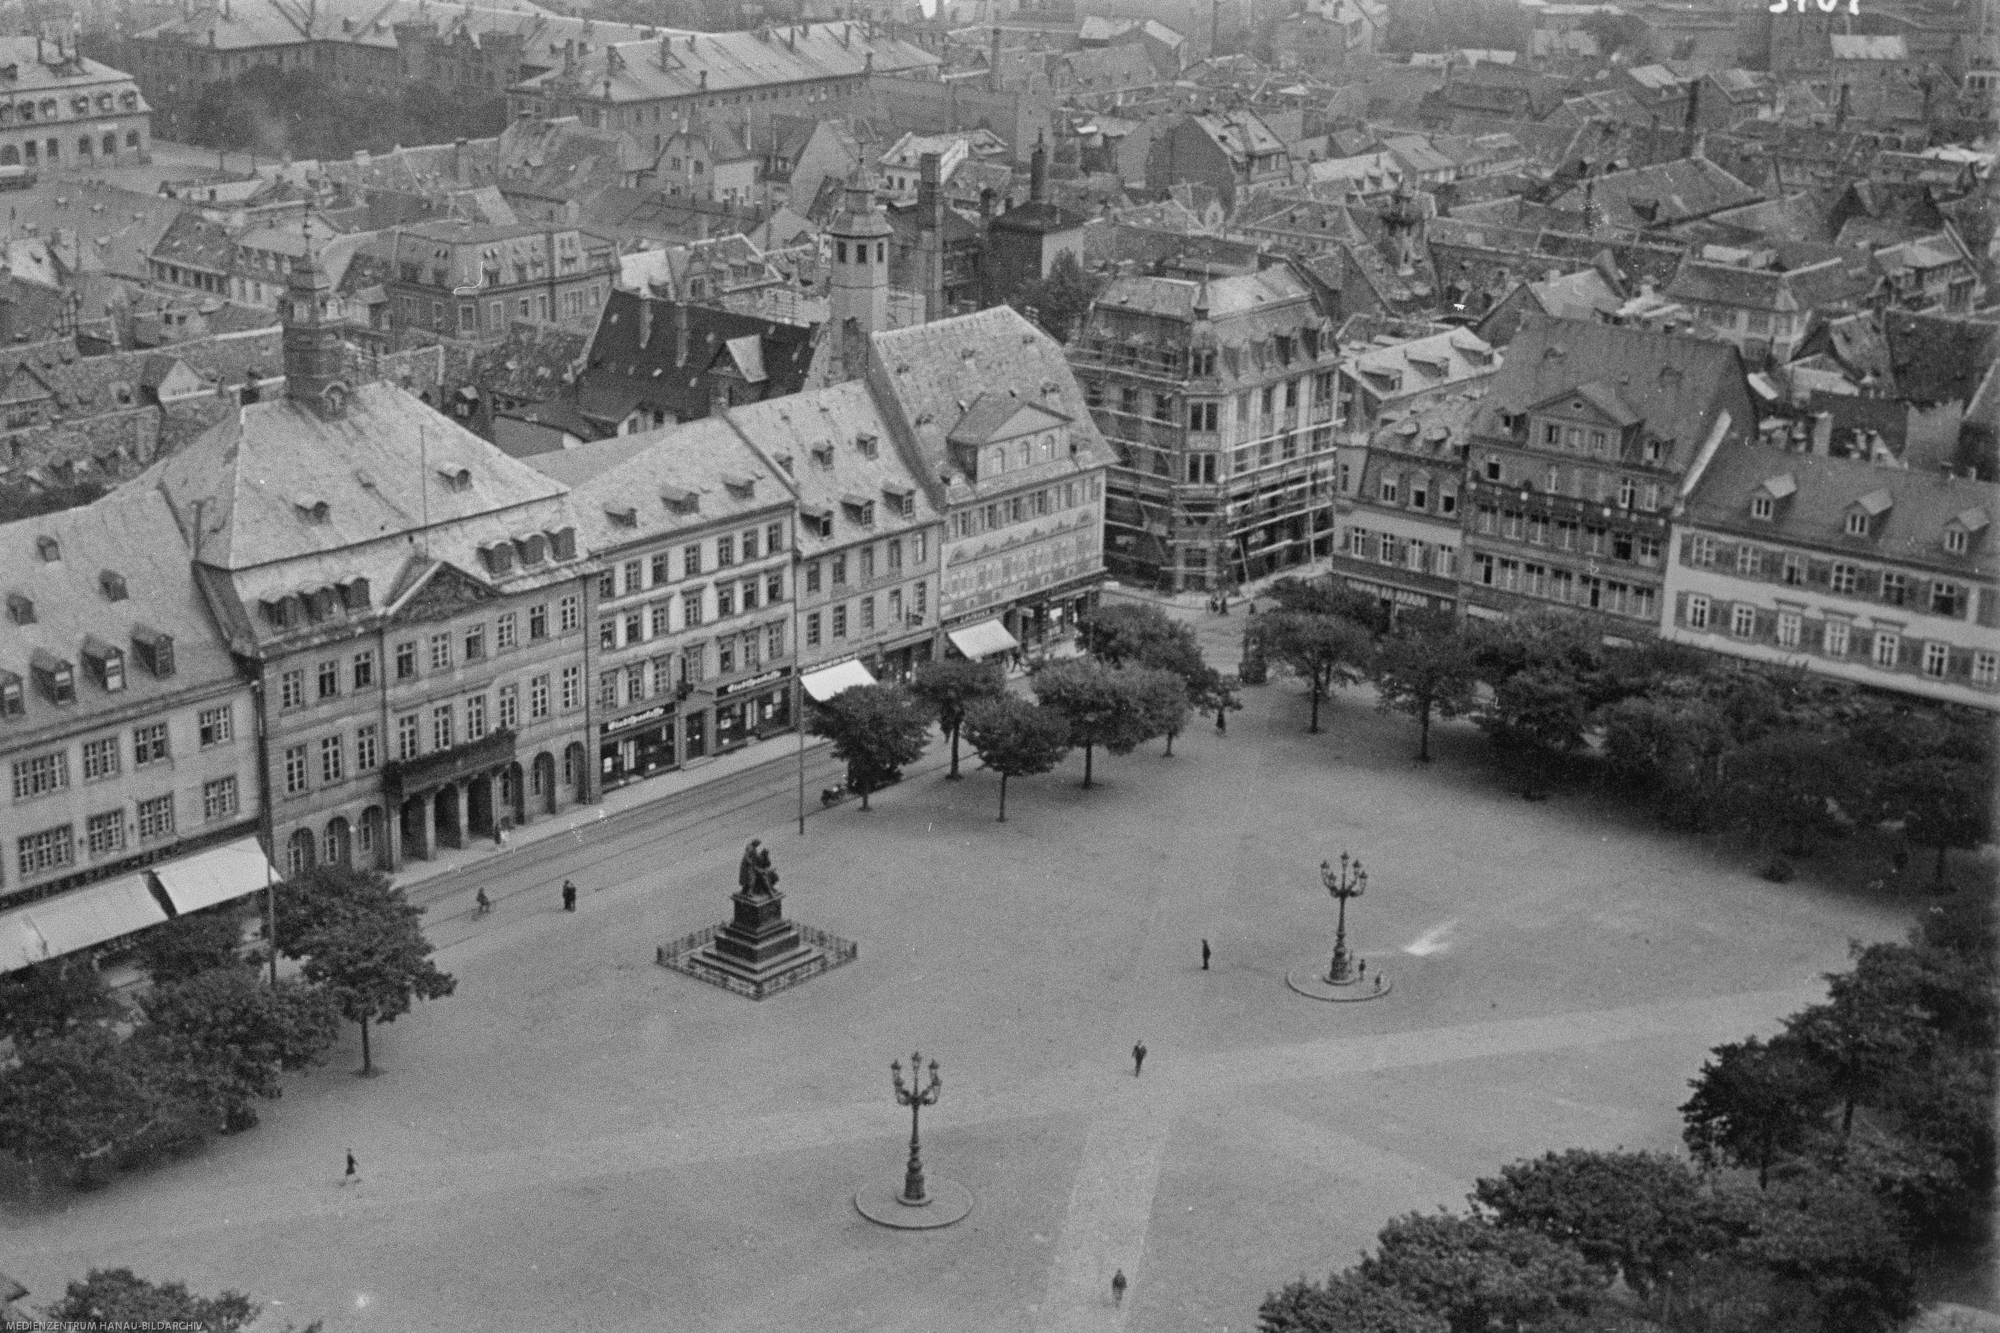 sliderimage-Marktplatz vor dem Krieg